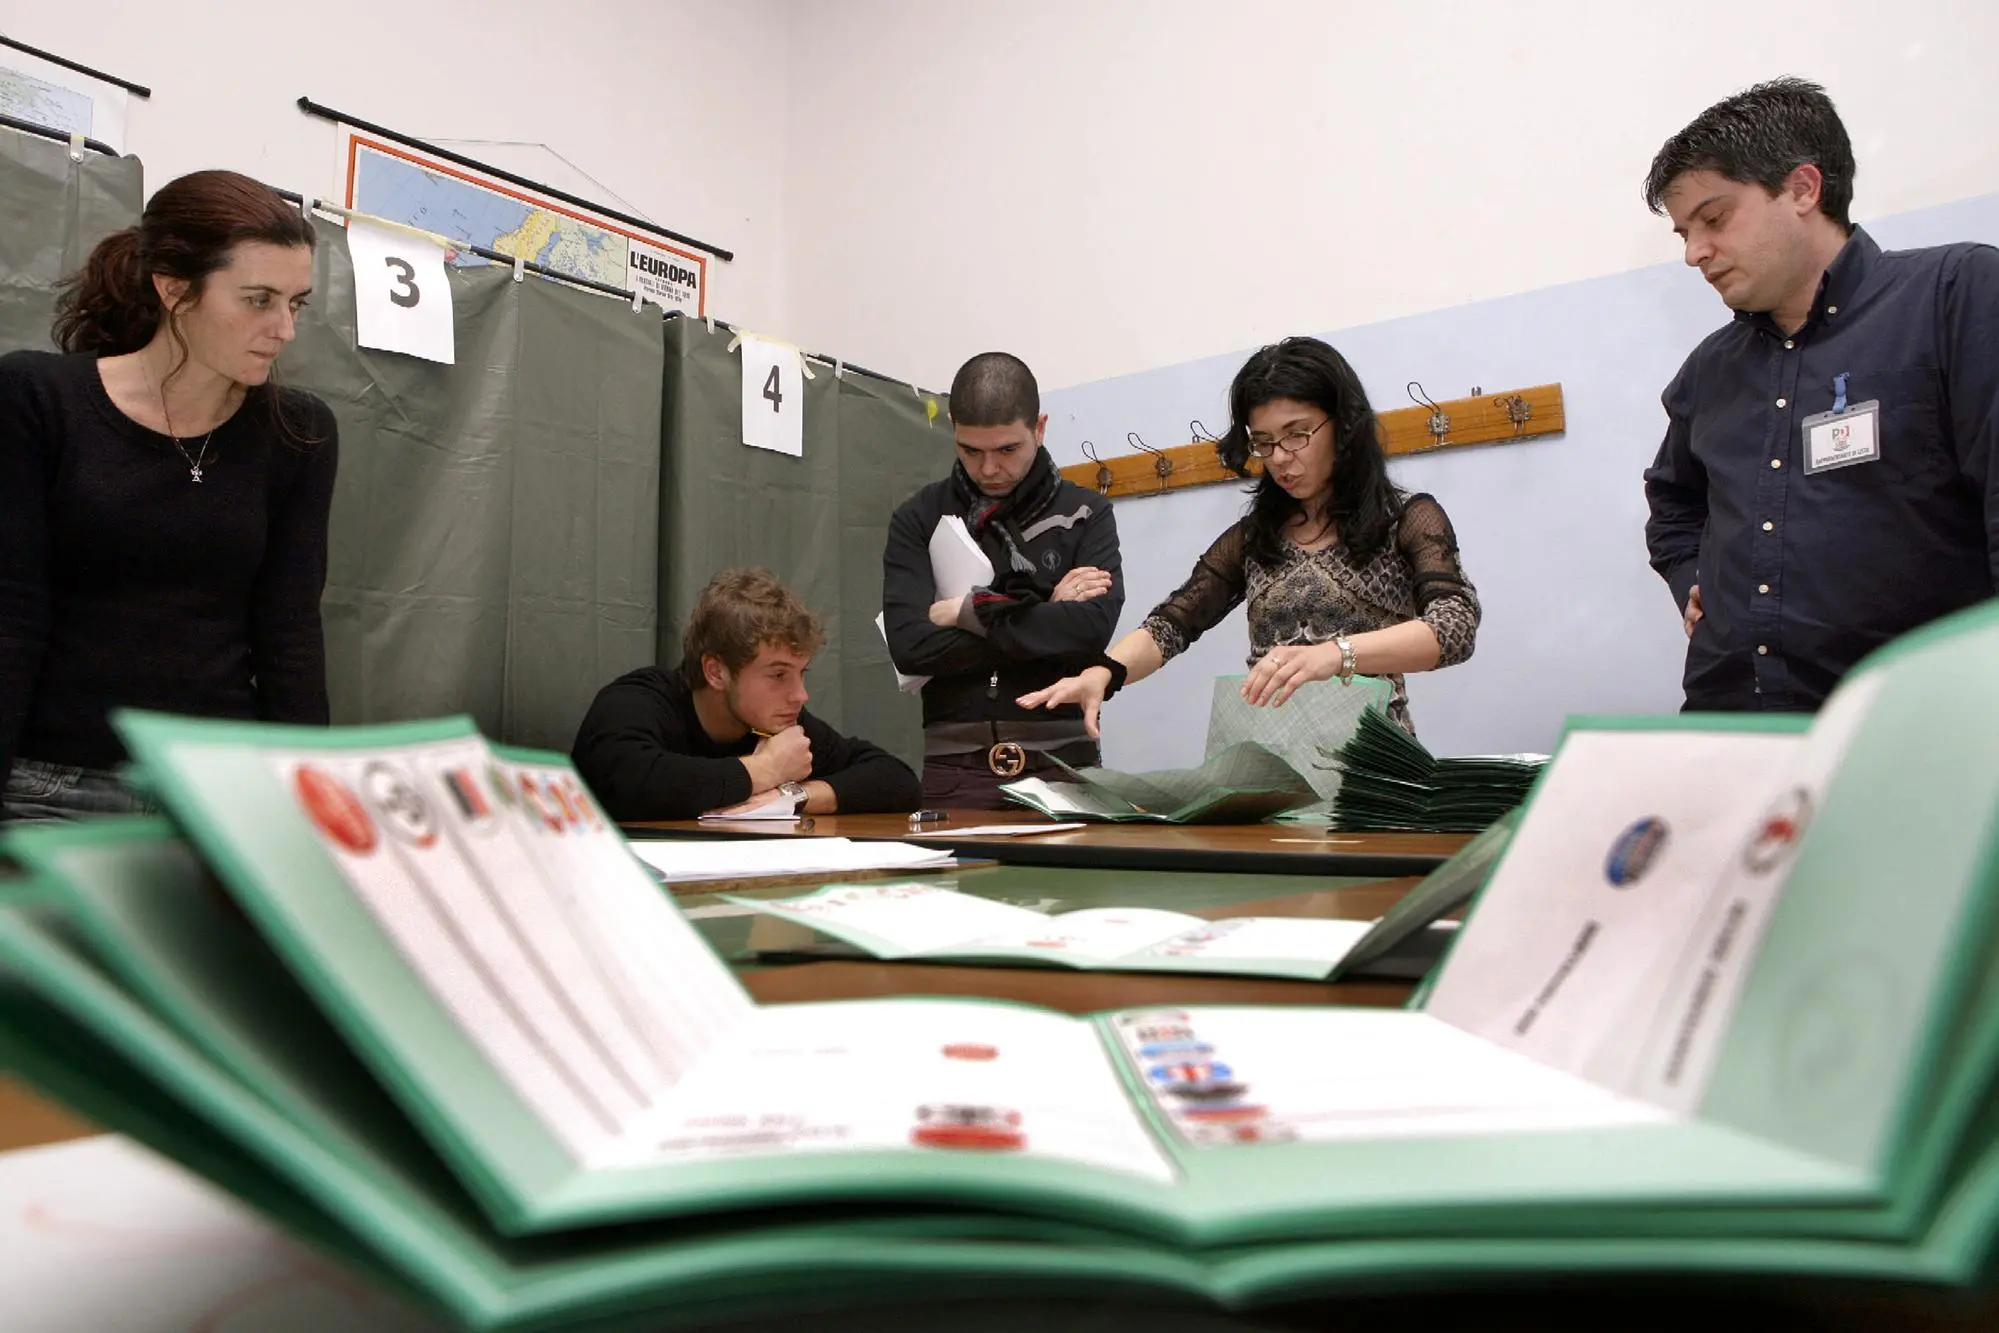 Un seggio elettorale (Archivio L'Unione Sarda)